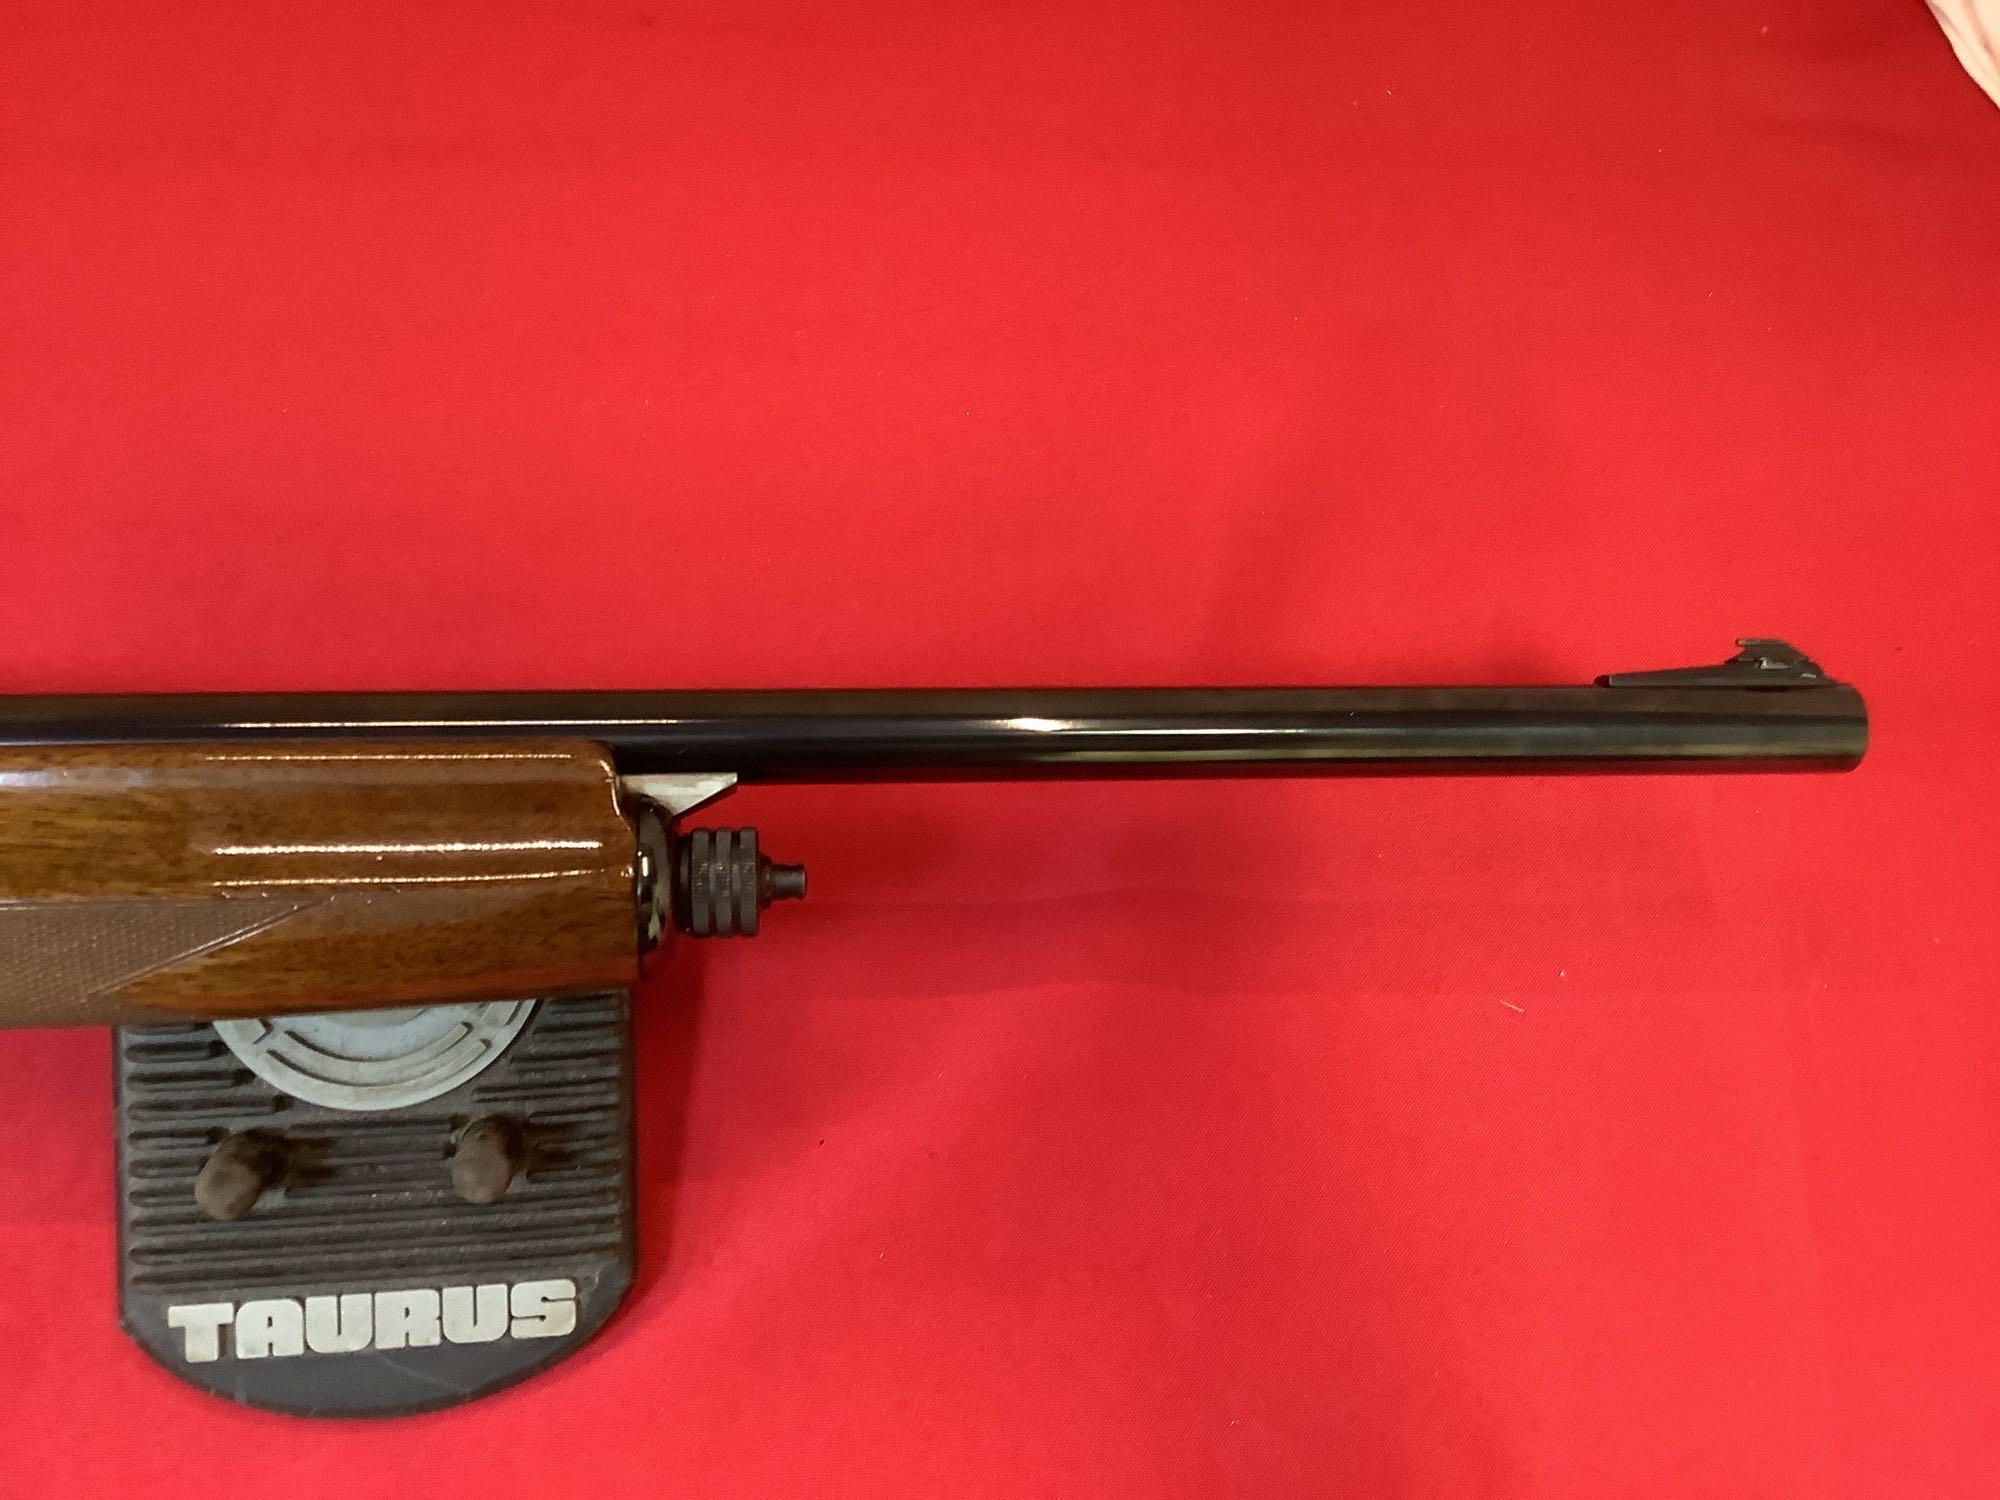 Browning mod. B 80 Shotgun